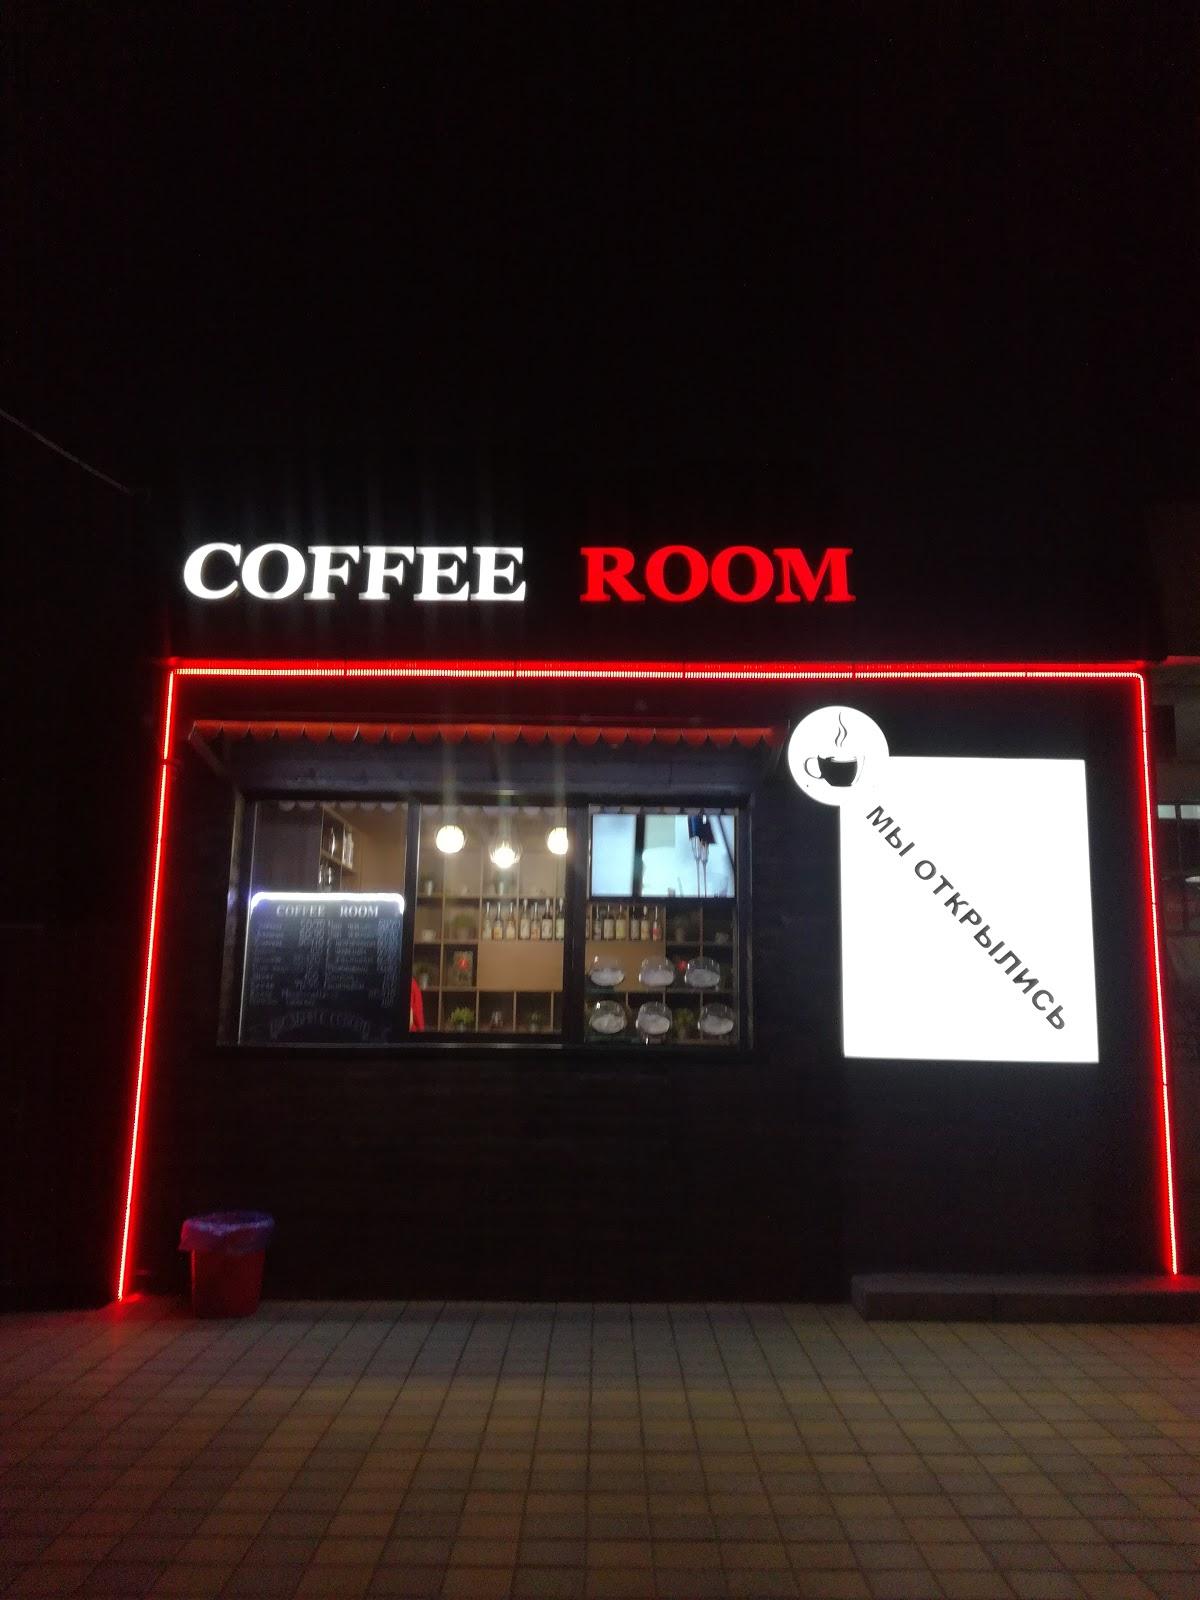 Coffee room